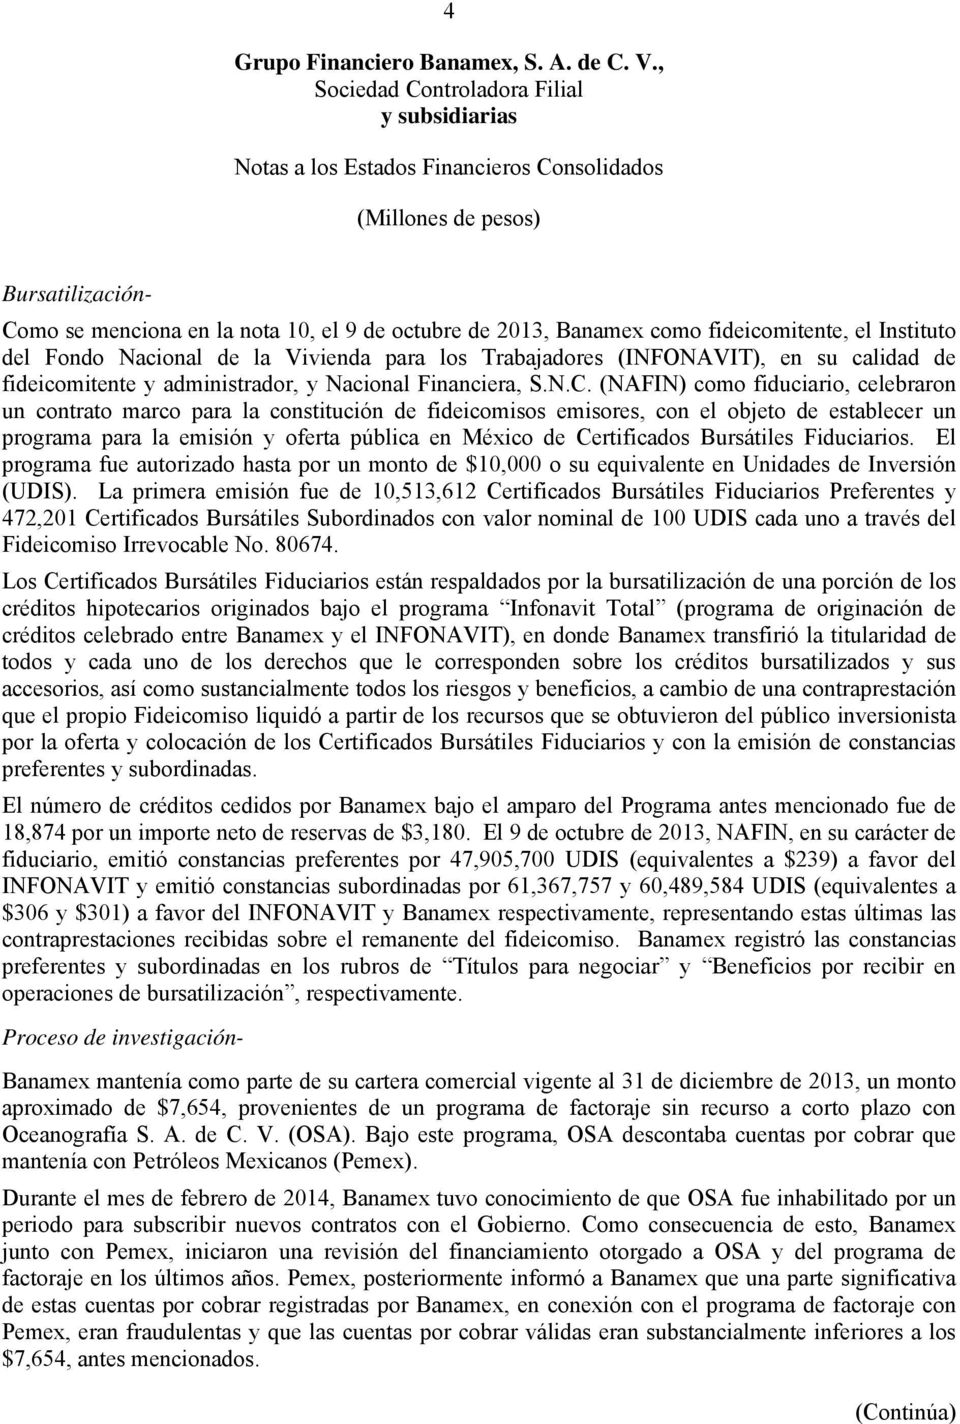 (NAFIN) como fiduciario, celebraron un contrato marco para la constitución de fideicomisos emisores, con el objeto de establecer un programa para la emisión y oferta pública en México de Certificados